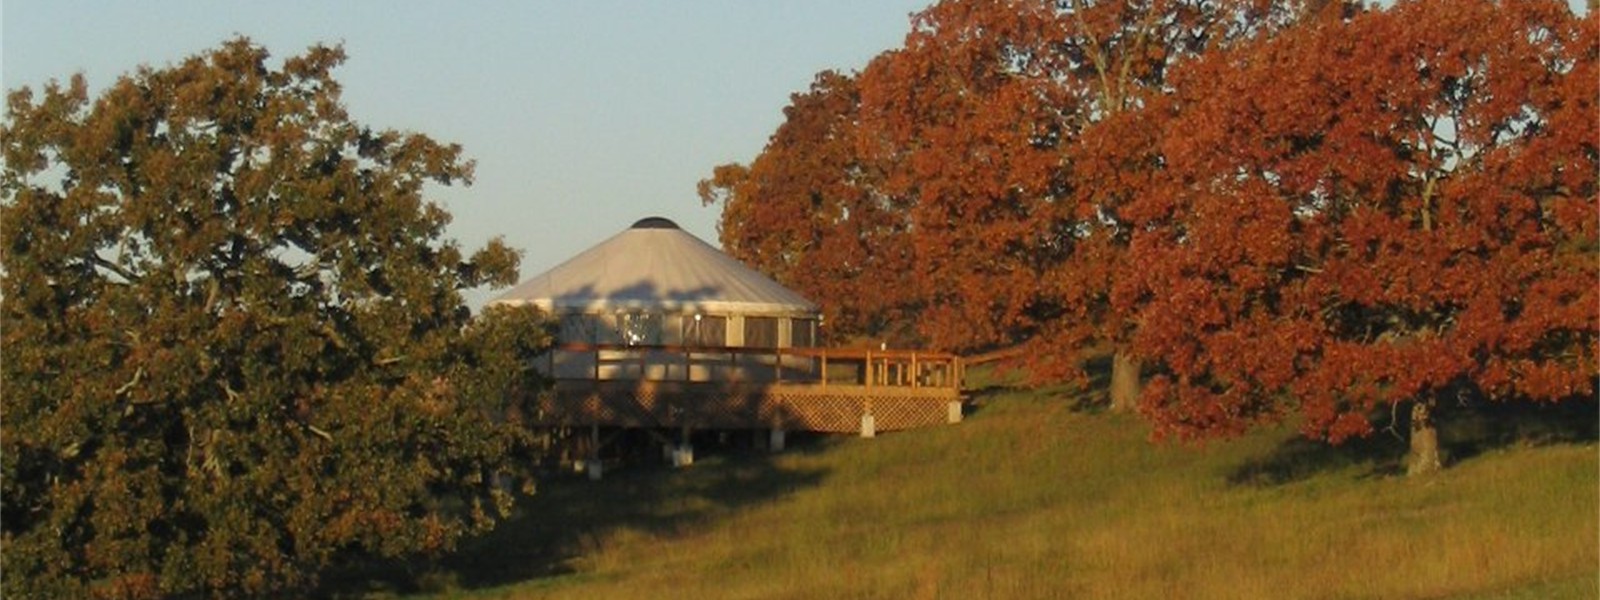 Deluxe yurt in autumn